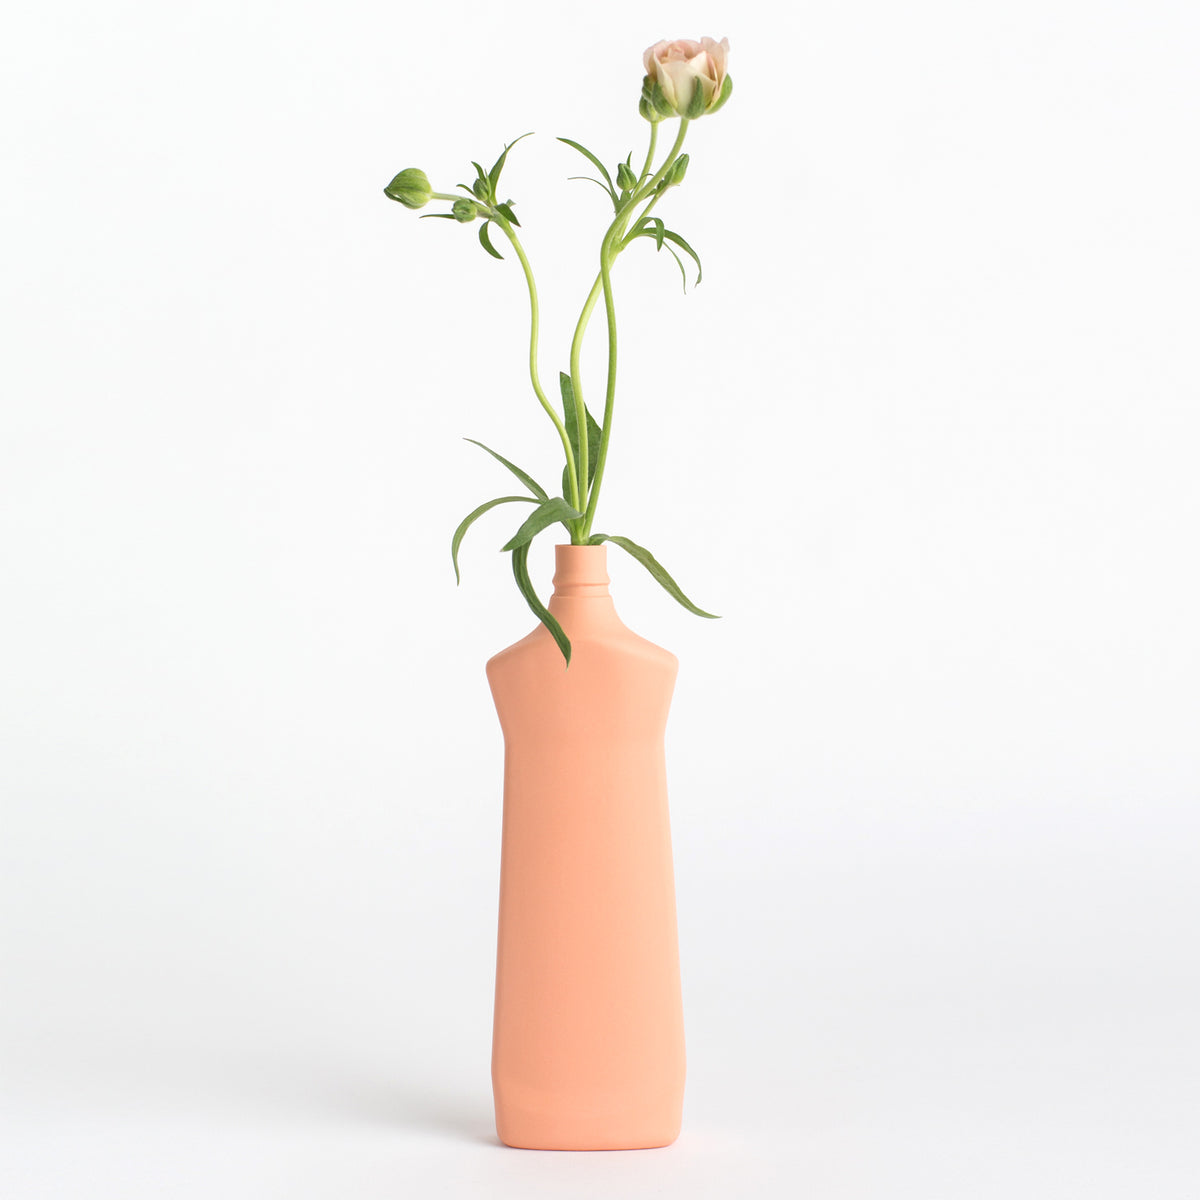 Porzellan-Vase #1 von Foekje Fleur bei Wilhelm die 3.